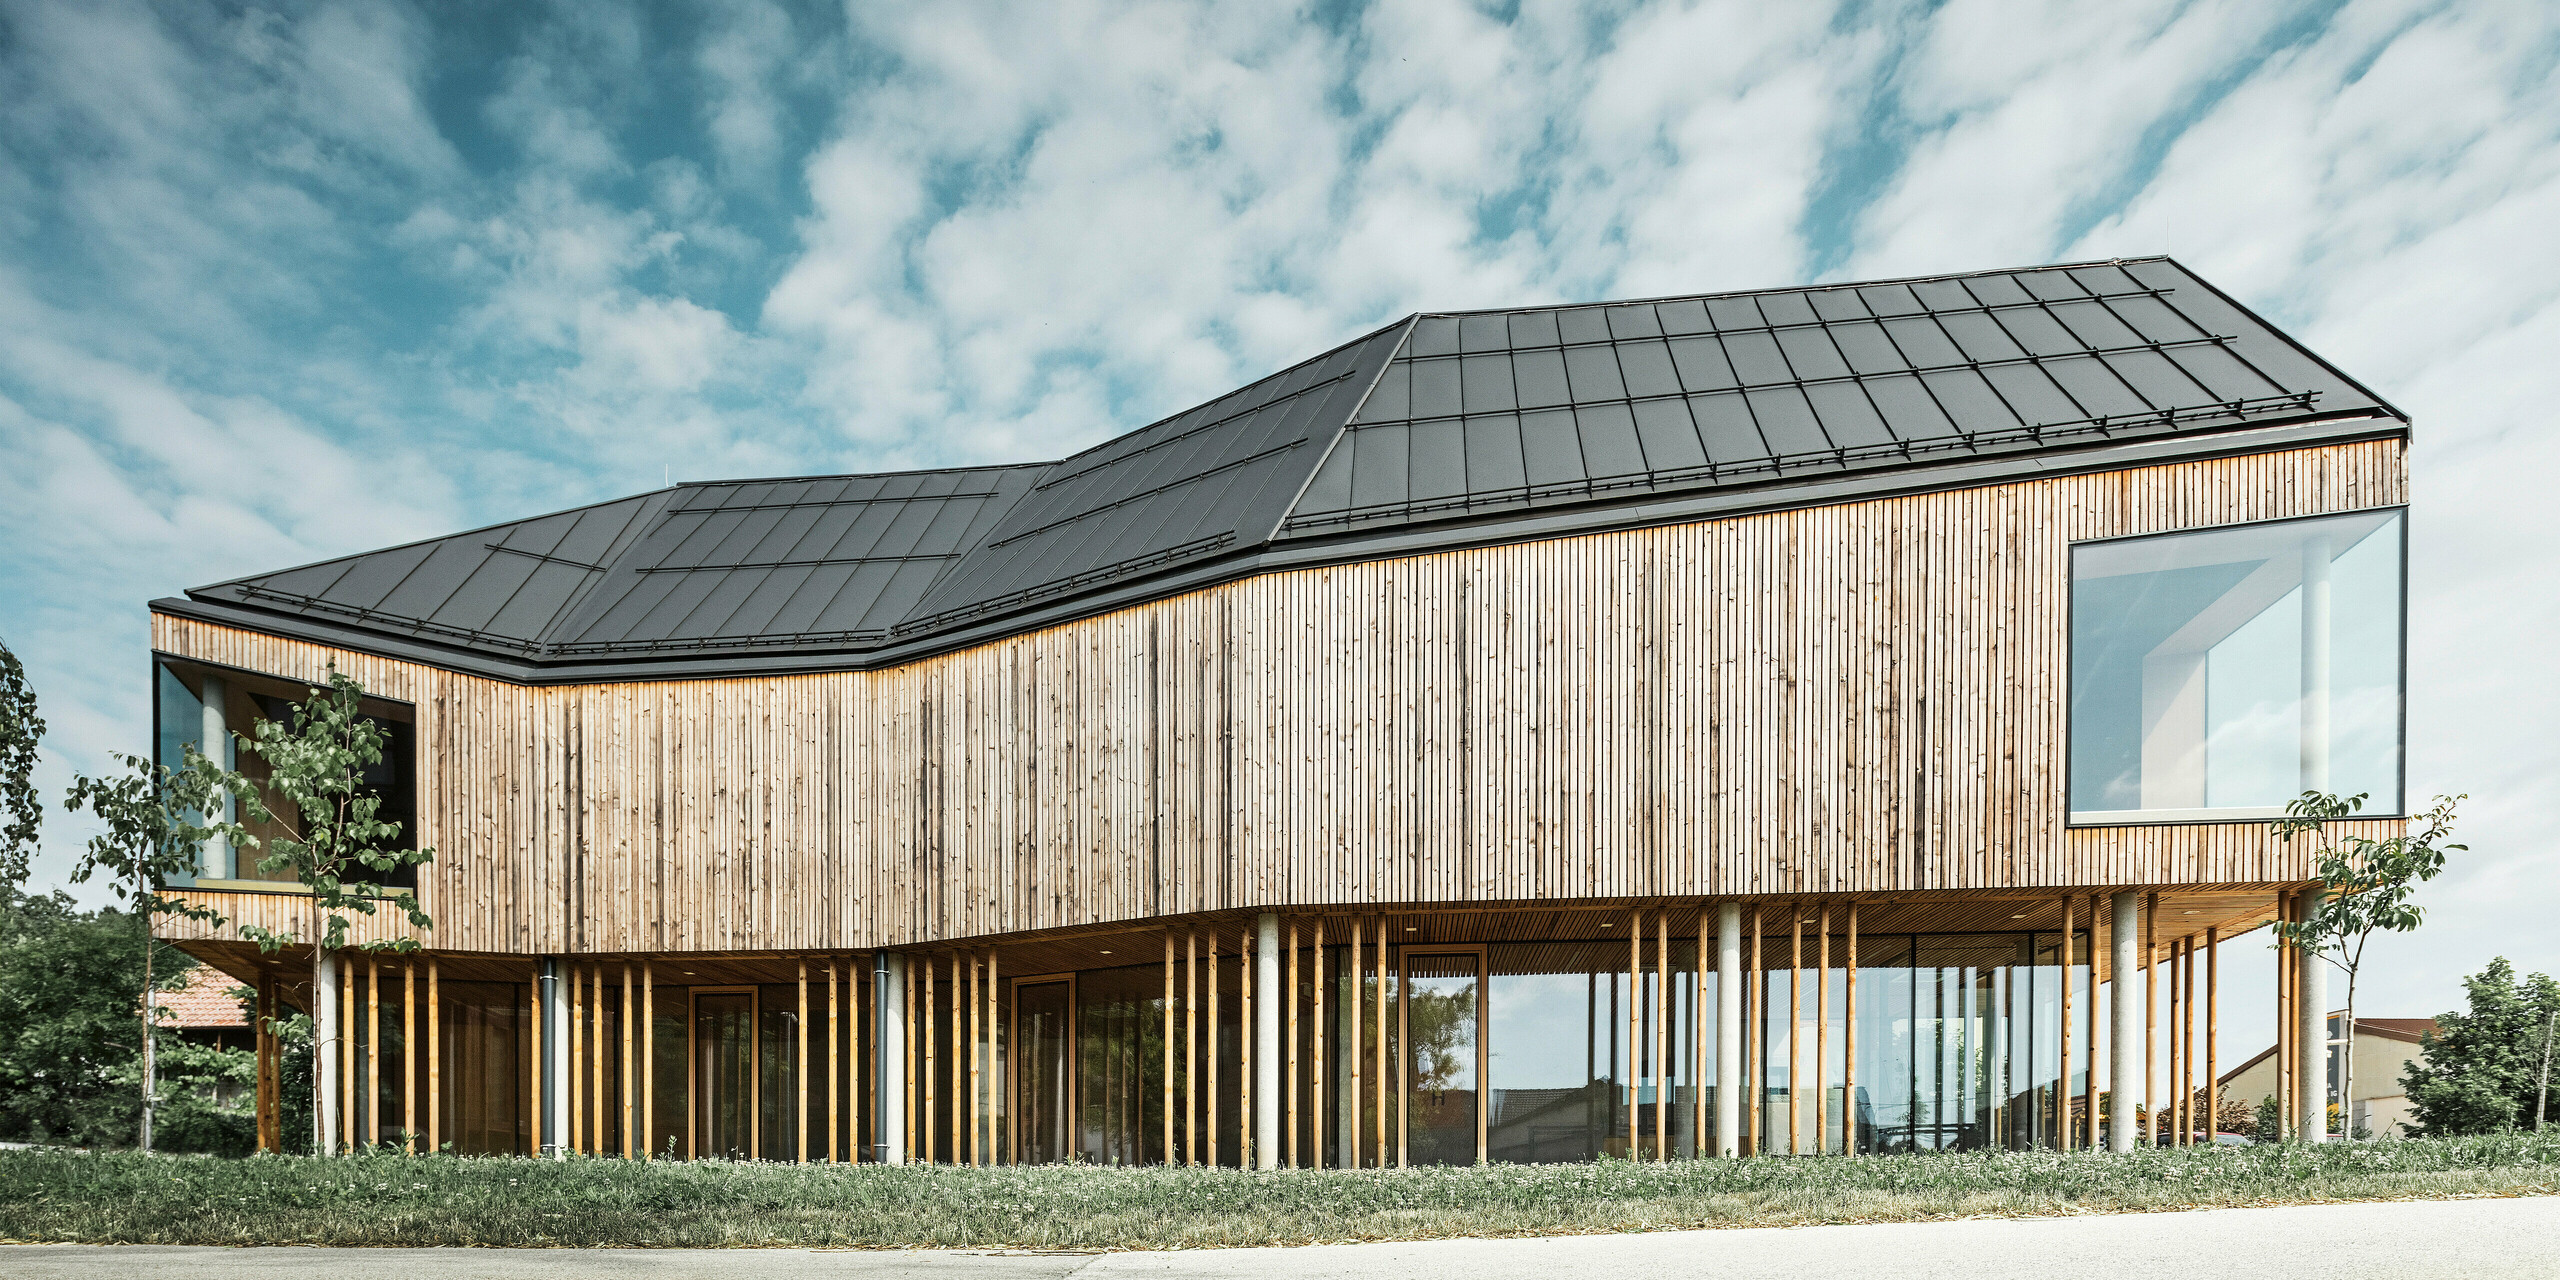 Pogled s strani na ekološko zasnovan center za obiskovalce na Igu v Sloveniji s temno sivo streho PREFALZ, ki poudarja čiste linije in sodoben arhitekturni jezik stavbe. Interakcija naravne lesene obloge in obsežne zasteklitve, ki odseva modro nebo in oblake, dokazuje povezavo med funkcionalnostjo in estetiko. Dizajn se brezhibno zliva s podeželskim okoljem in odraža inovativne metode gradnje.